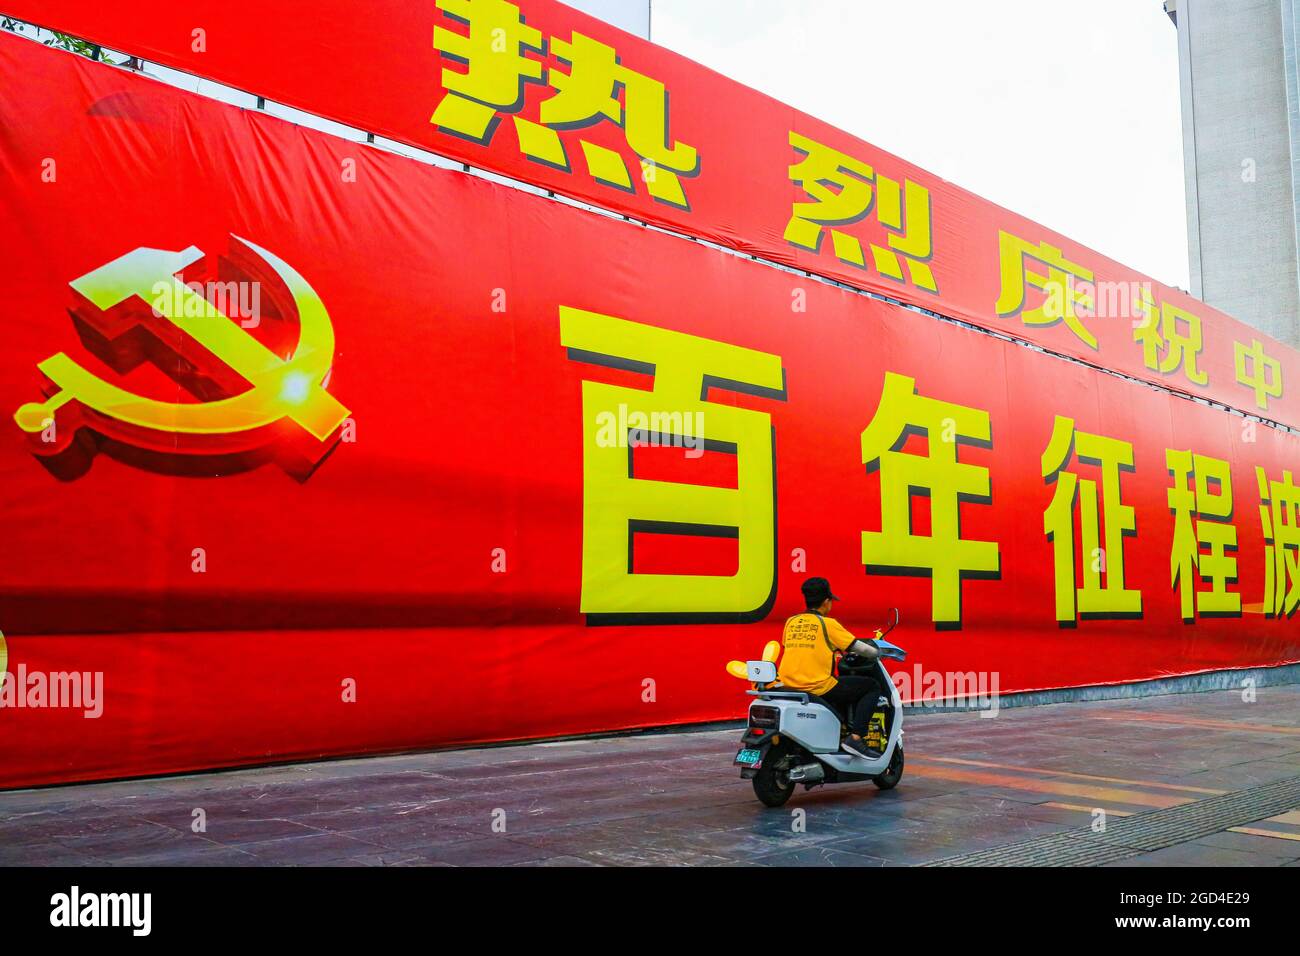 Un homme sur un scooter passe devant une immense bannière commémorant le 100e anniversaire de la fondation du Parti communiste chinois. Une bannière géante célébrant le 100e anniversaire de la fondation du Parti communiste de Chine est exposée sur l'avenue principale de Guilin, en Chine Banque D'Images